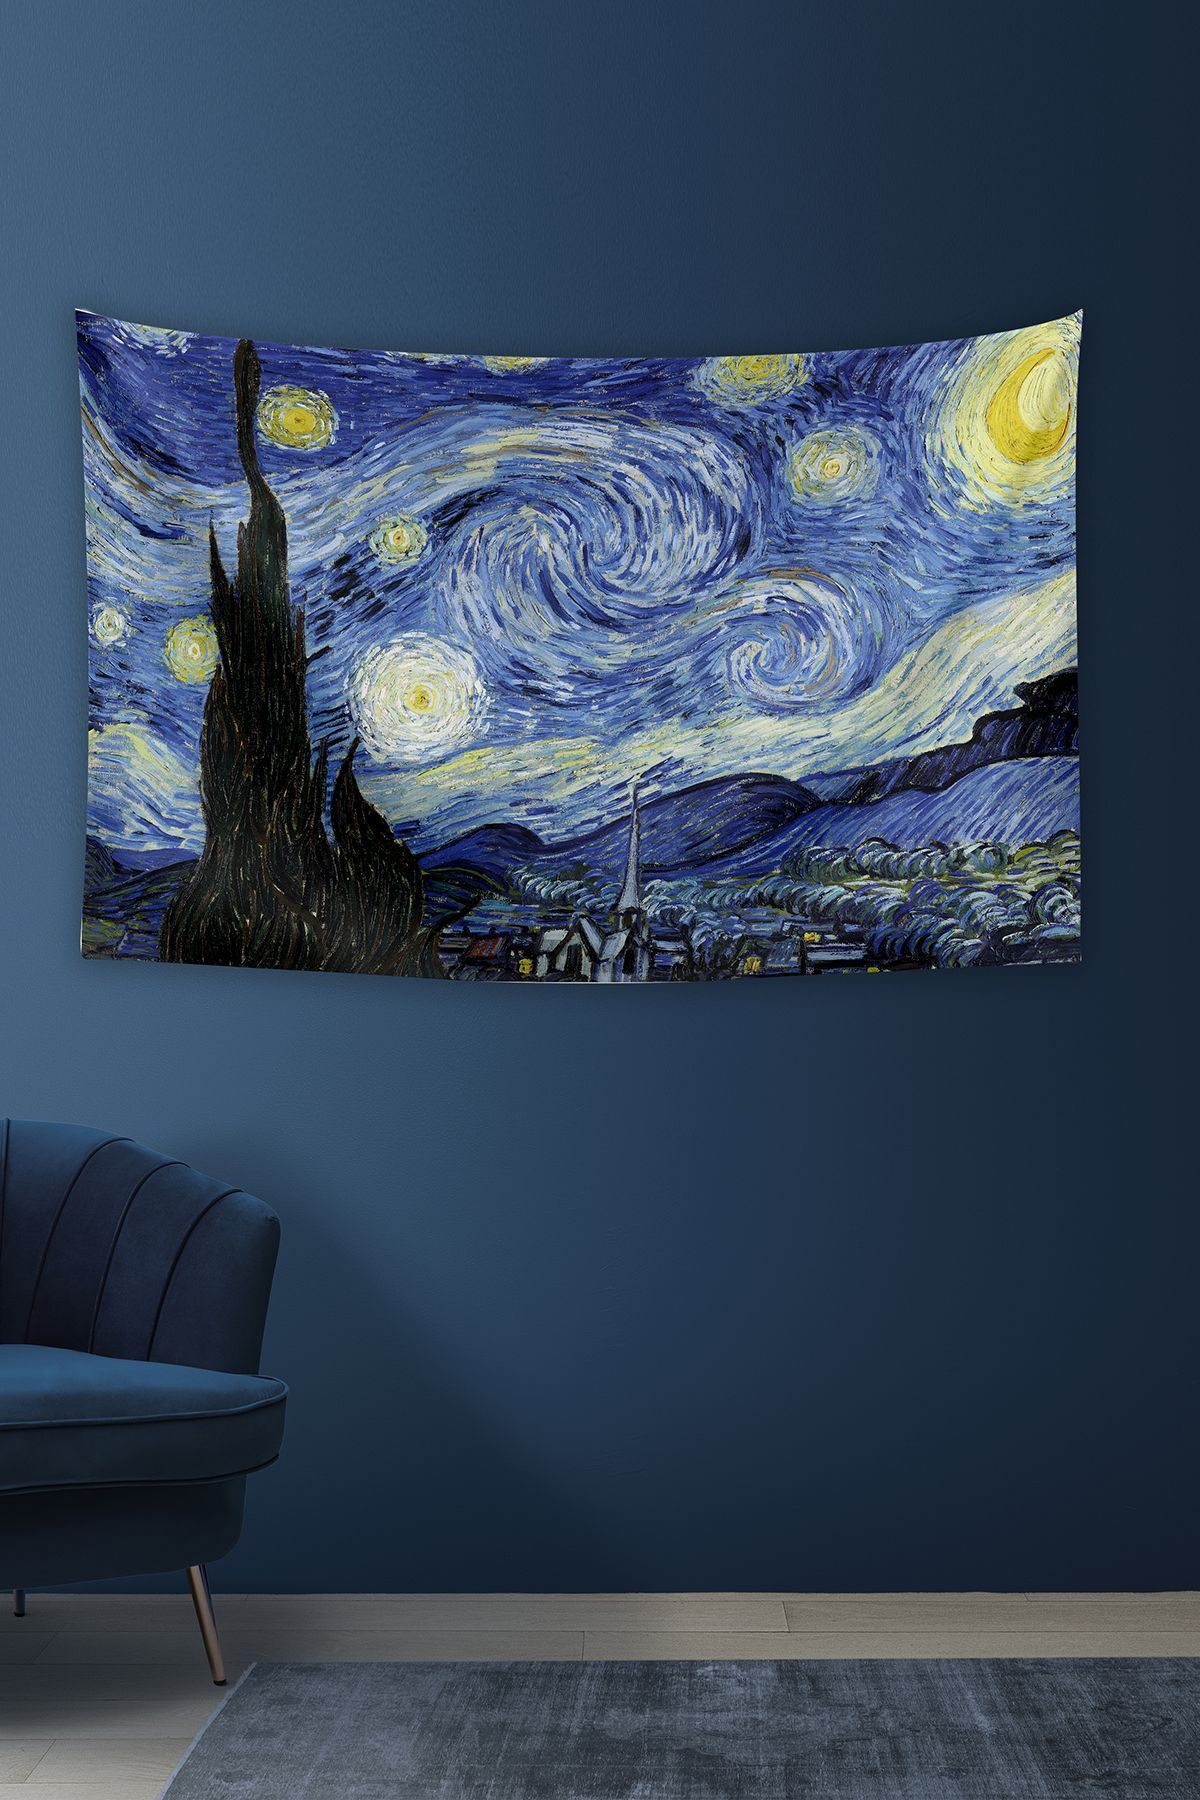 KanvasSepeti Van Gogh Yıldızlı Gece 1 Duvar Örtüsü Yağlı Boya Dokulu